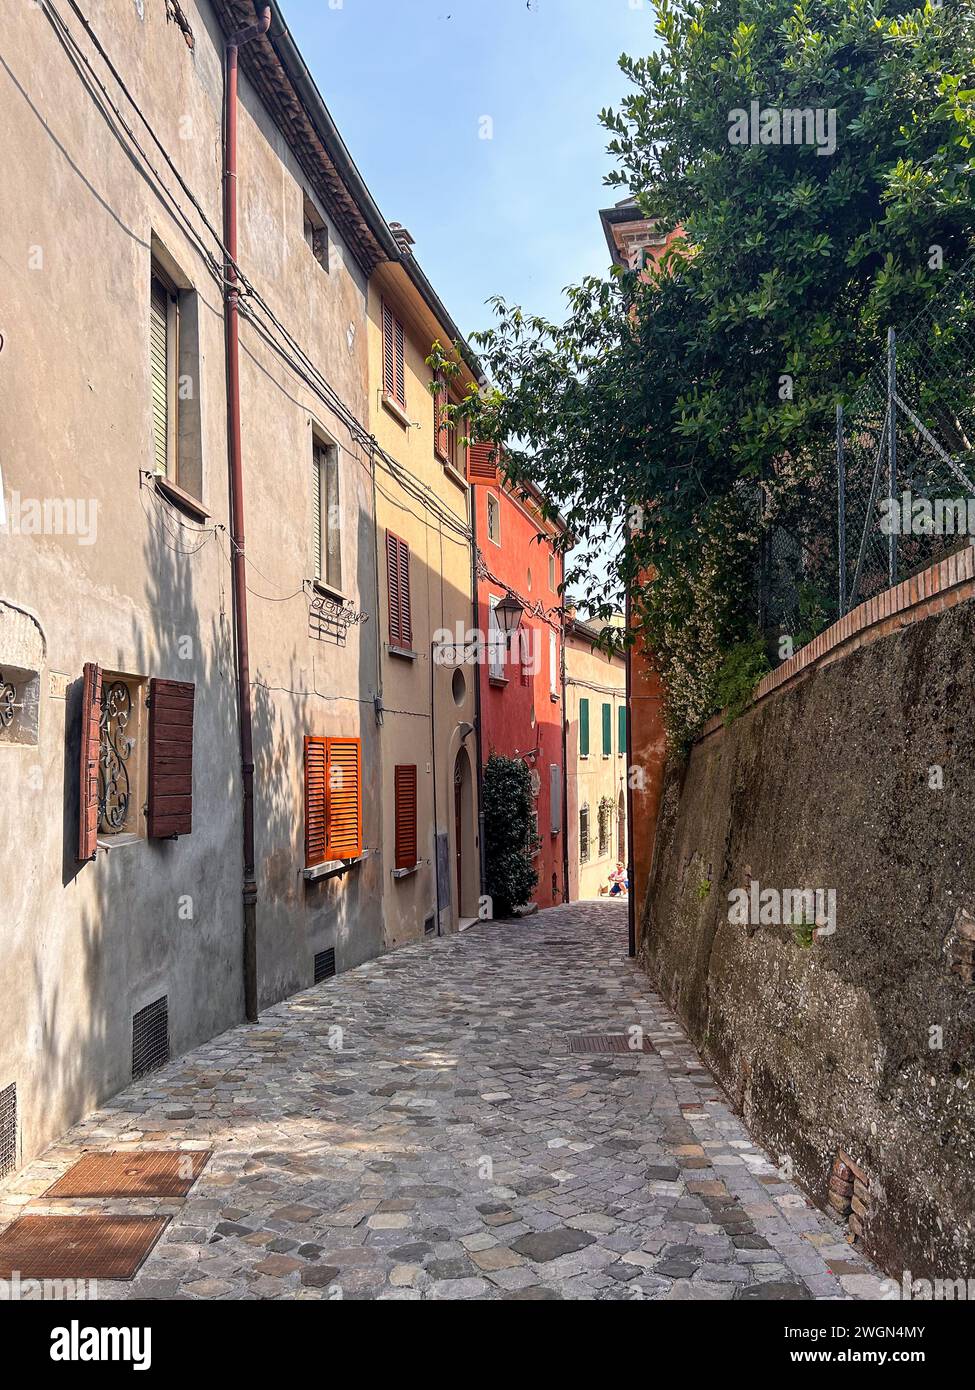 Entrez dans la beauté intemporelle de Santarcangelo di Romagna, où les rues étroites en pierre mènent à des façades colorées faisant écho aux récits du passé. Banque D'Images